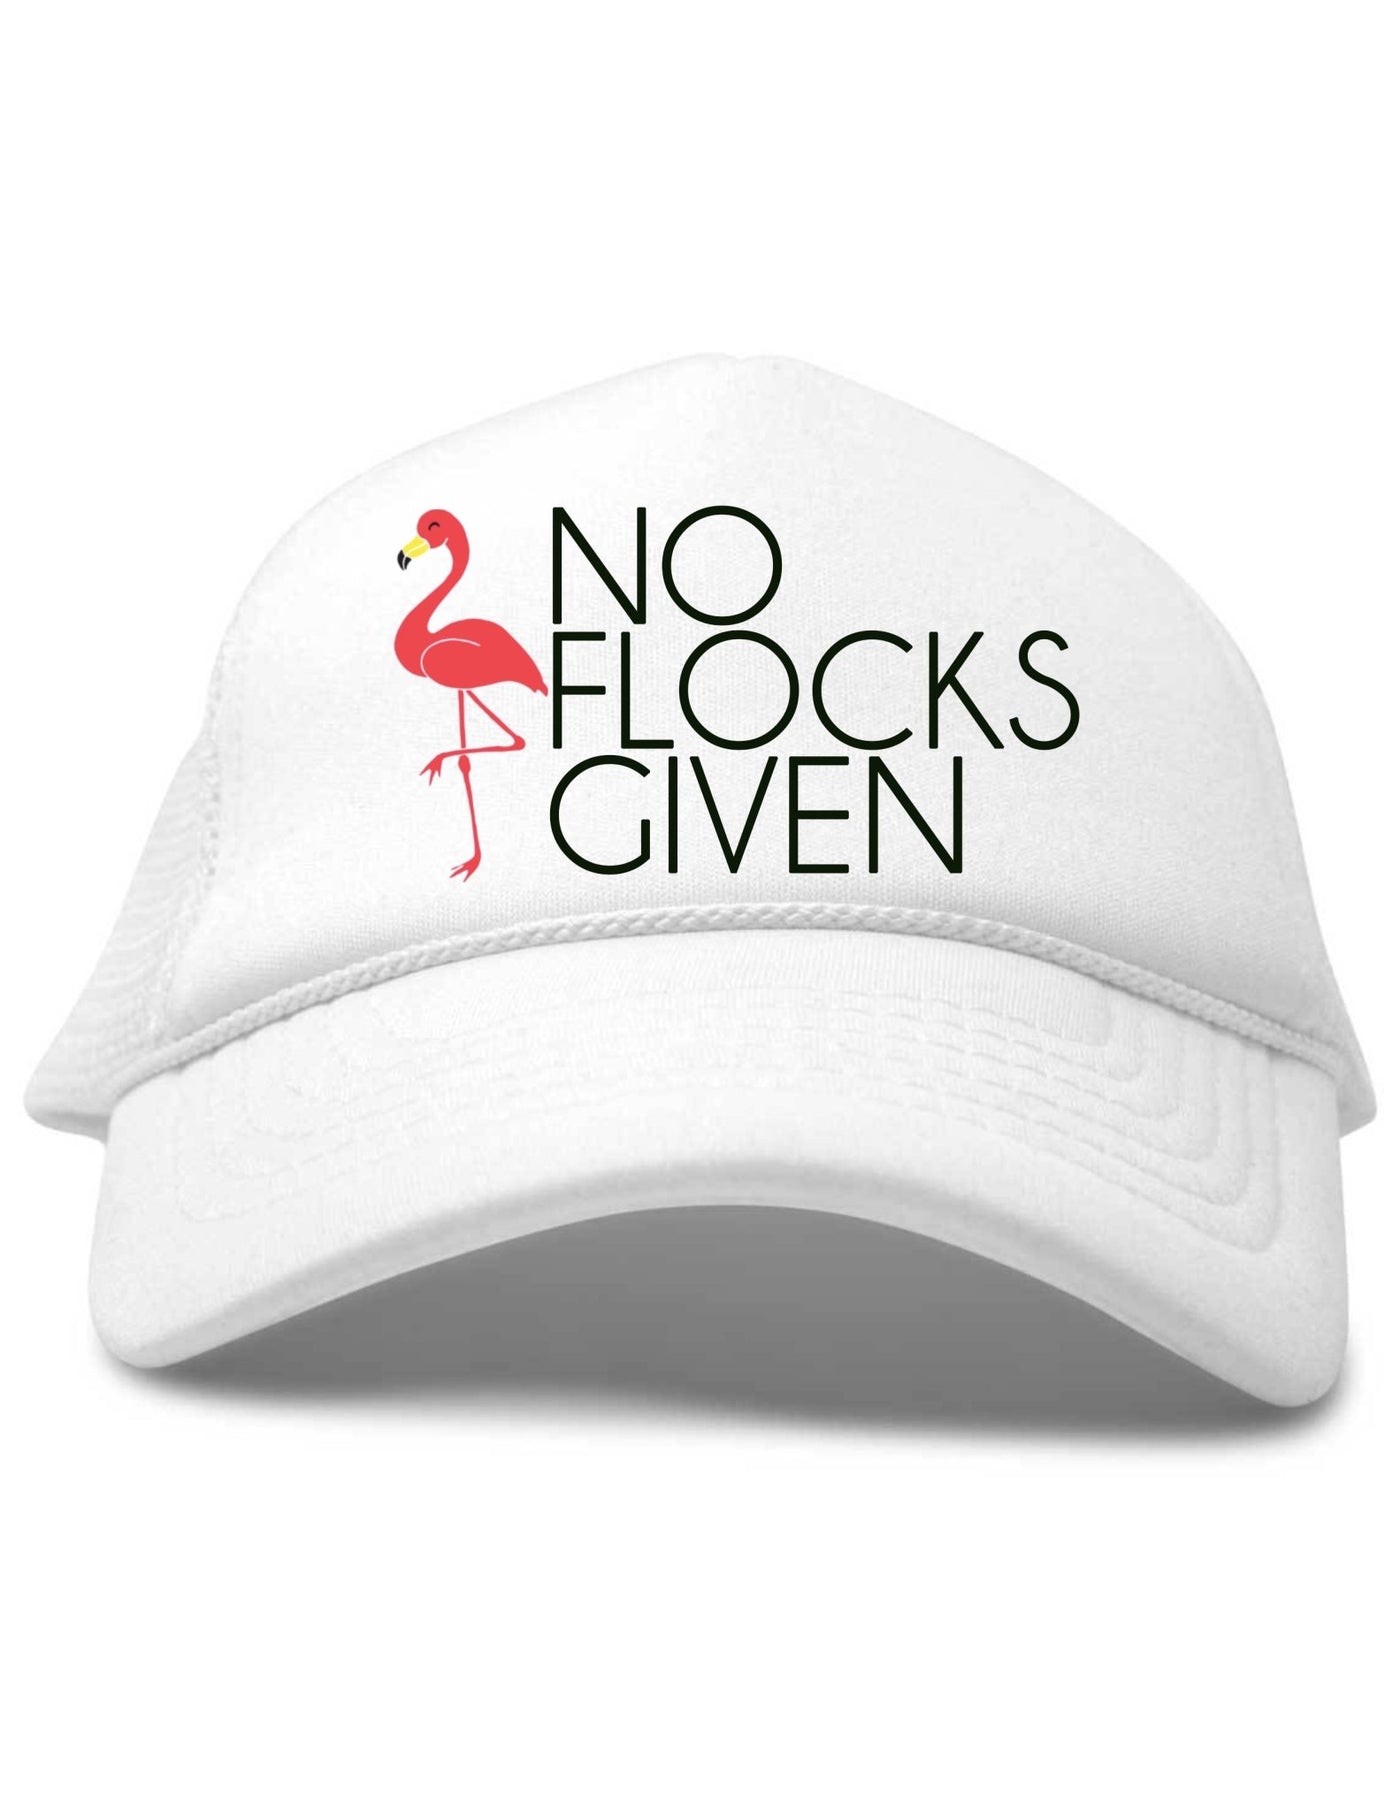 No Flocks GIven (Gray/White)